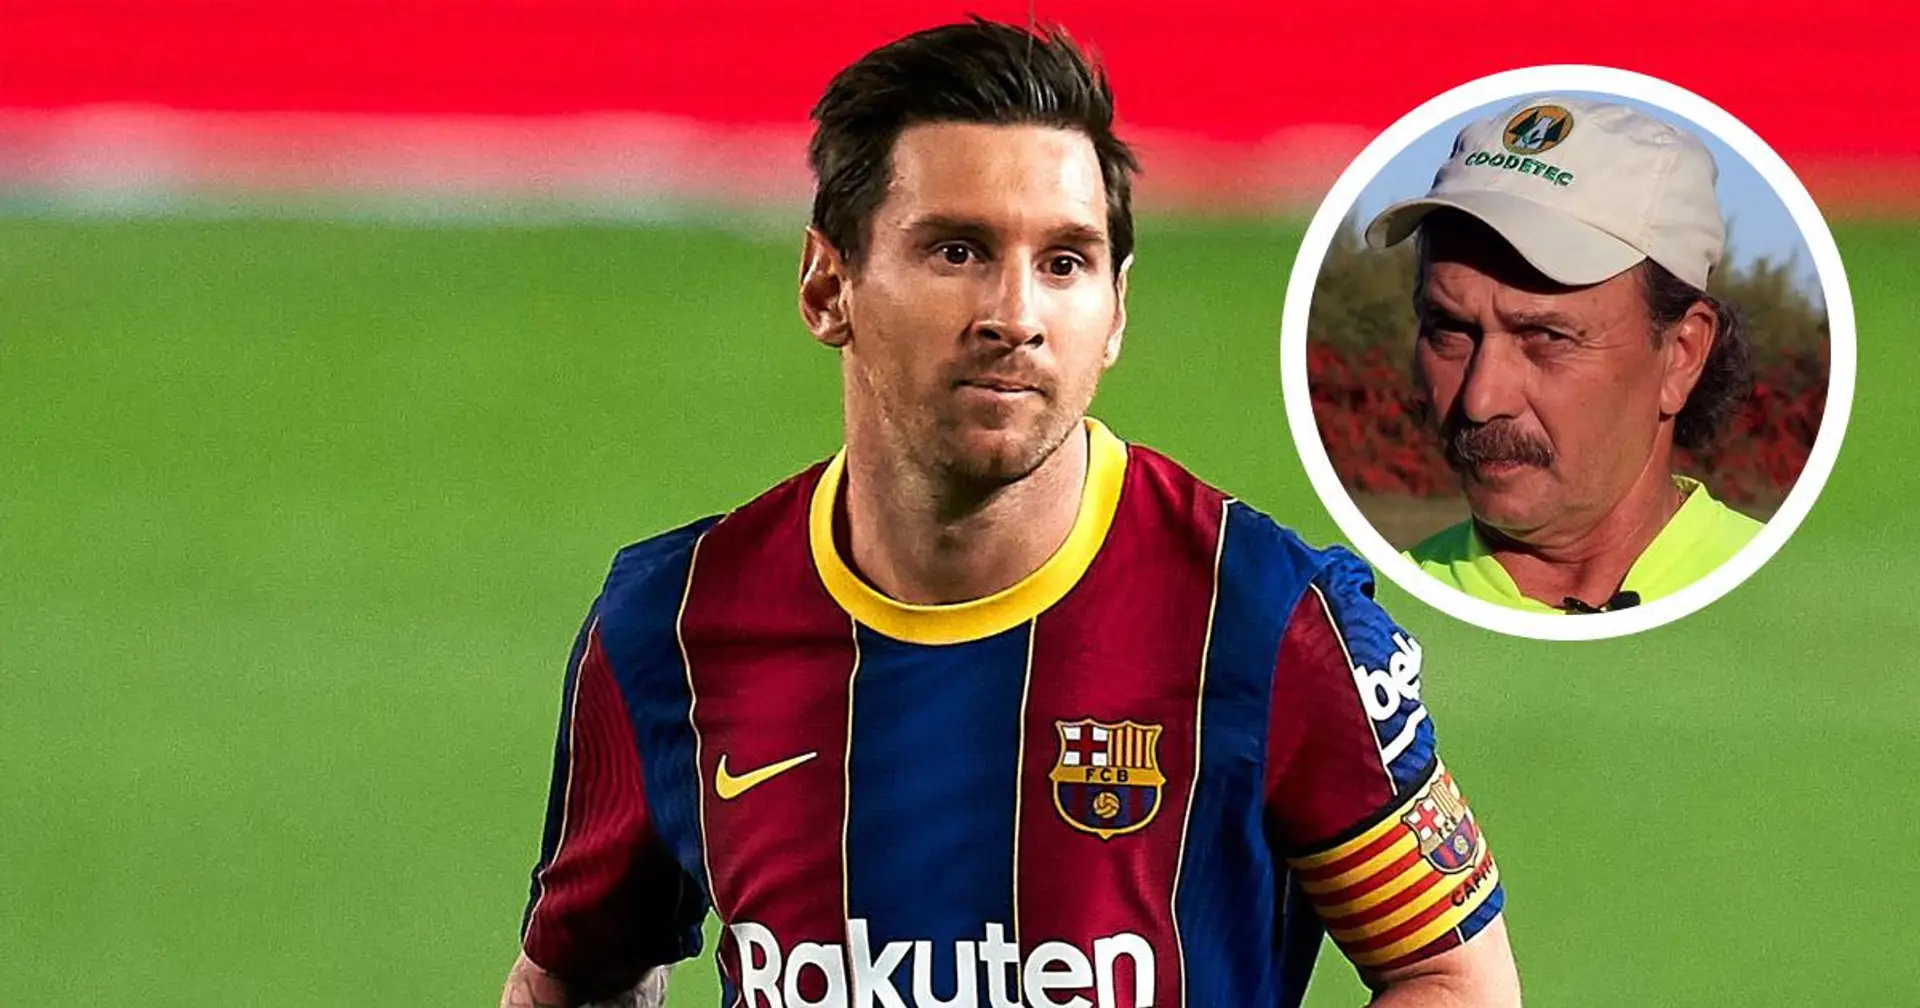 Messi a déjà dribblé toute une équipe, y compris le gardien de but, mais n'a pas tiré le ballon dans le but vide - histoire réconfortante racontée par l'ancien entraîneur de Leo